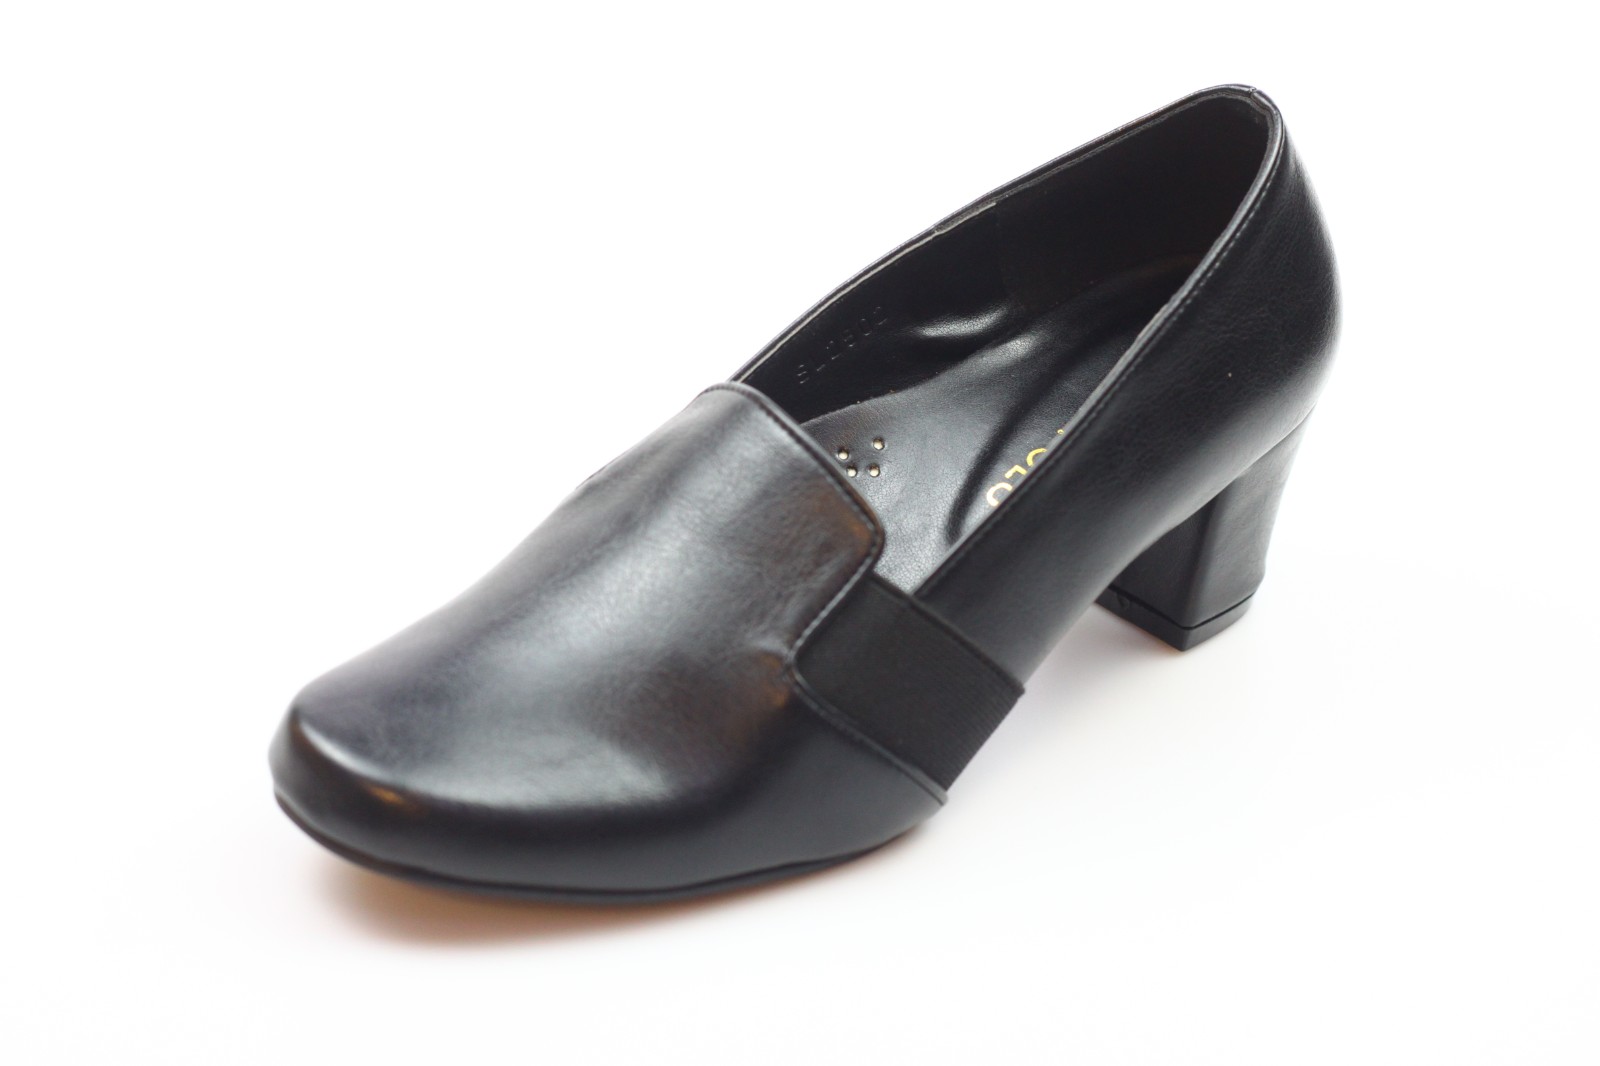 black shoes 1 inch heel